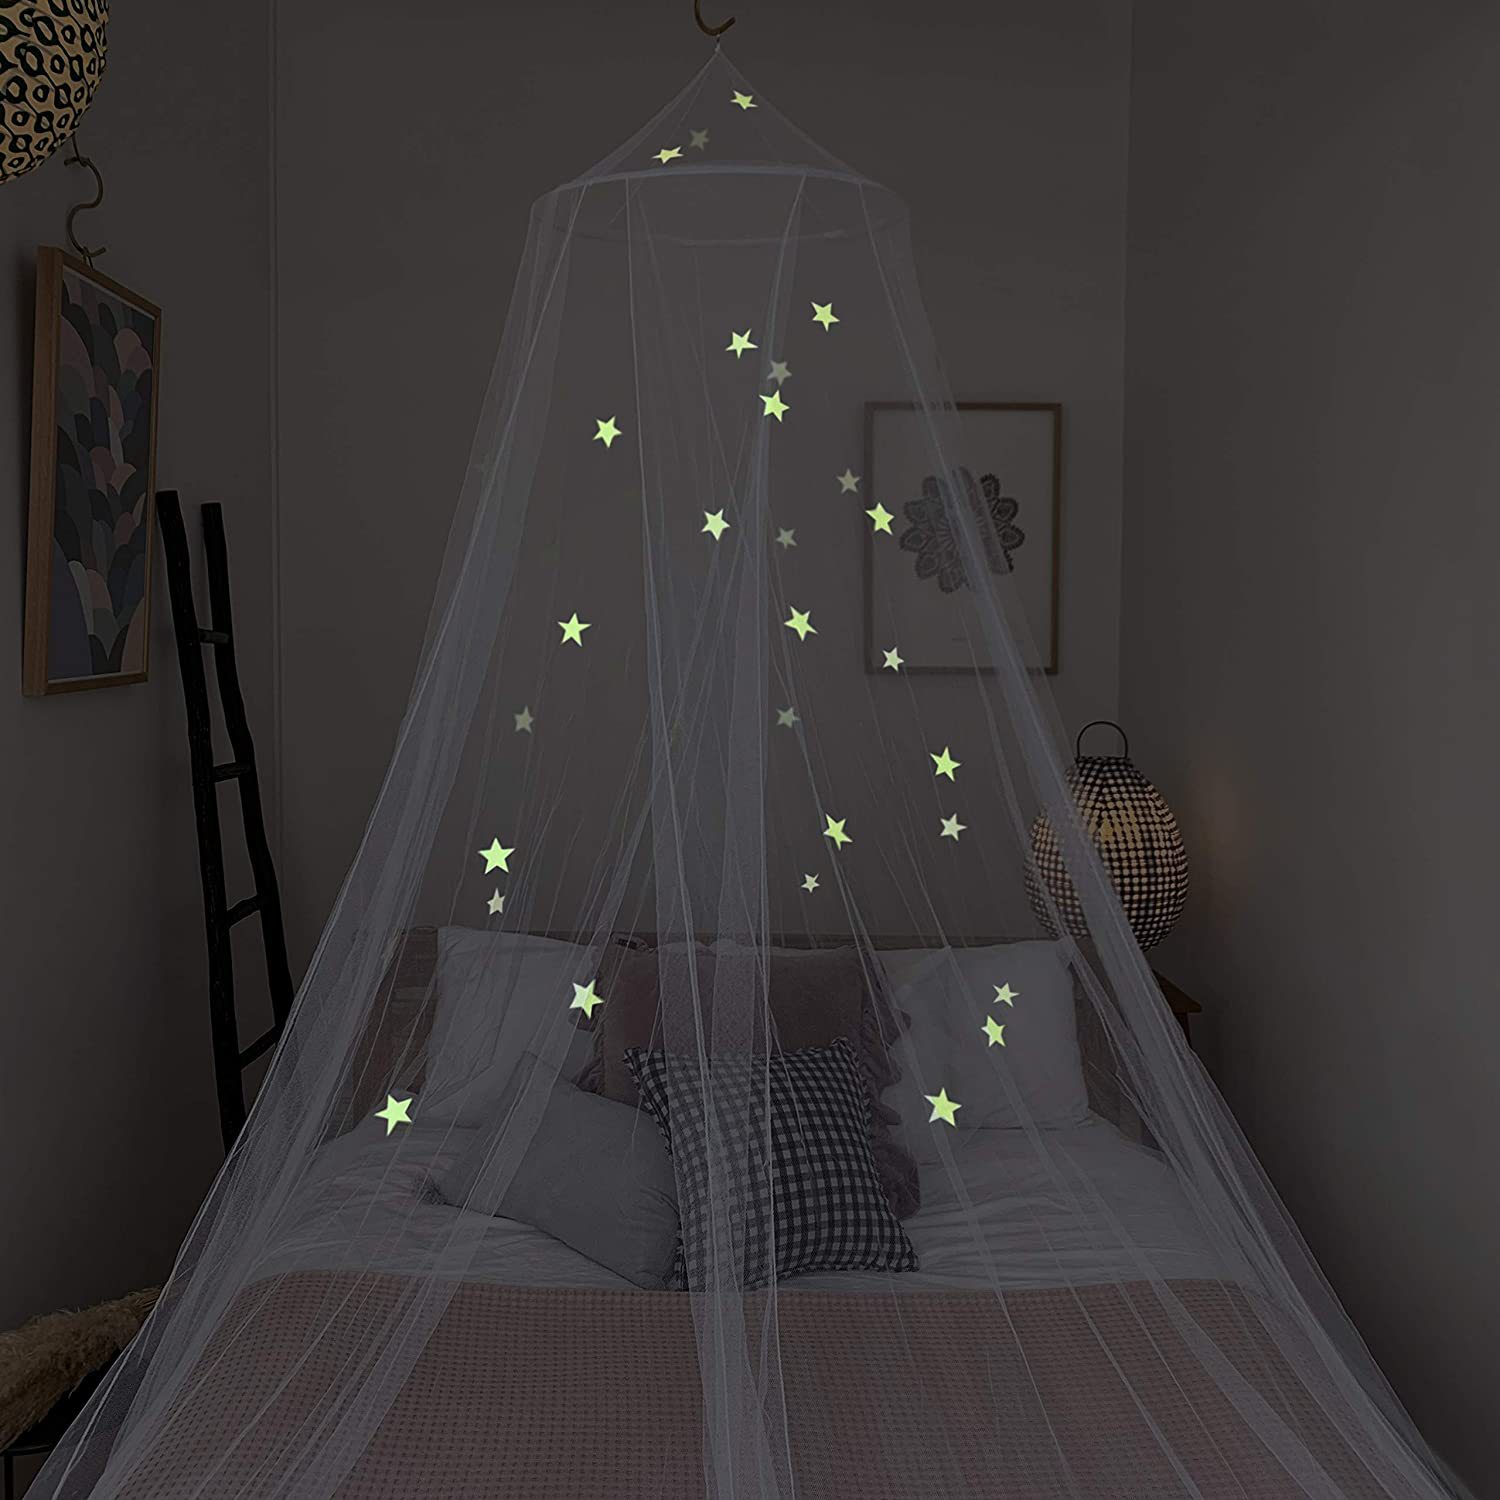 儿童悬挂床罩适用于男女孩床在黑暗星发光的夜星图案适合全尺寸床